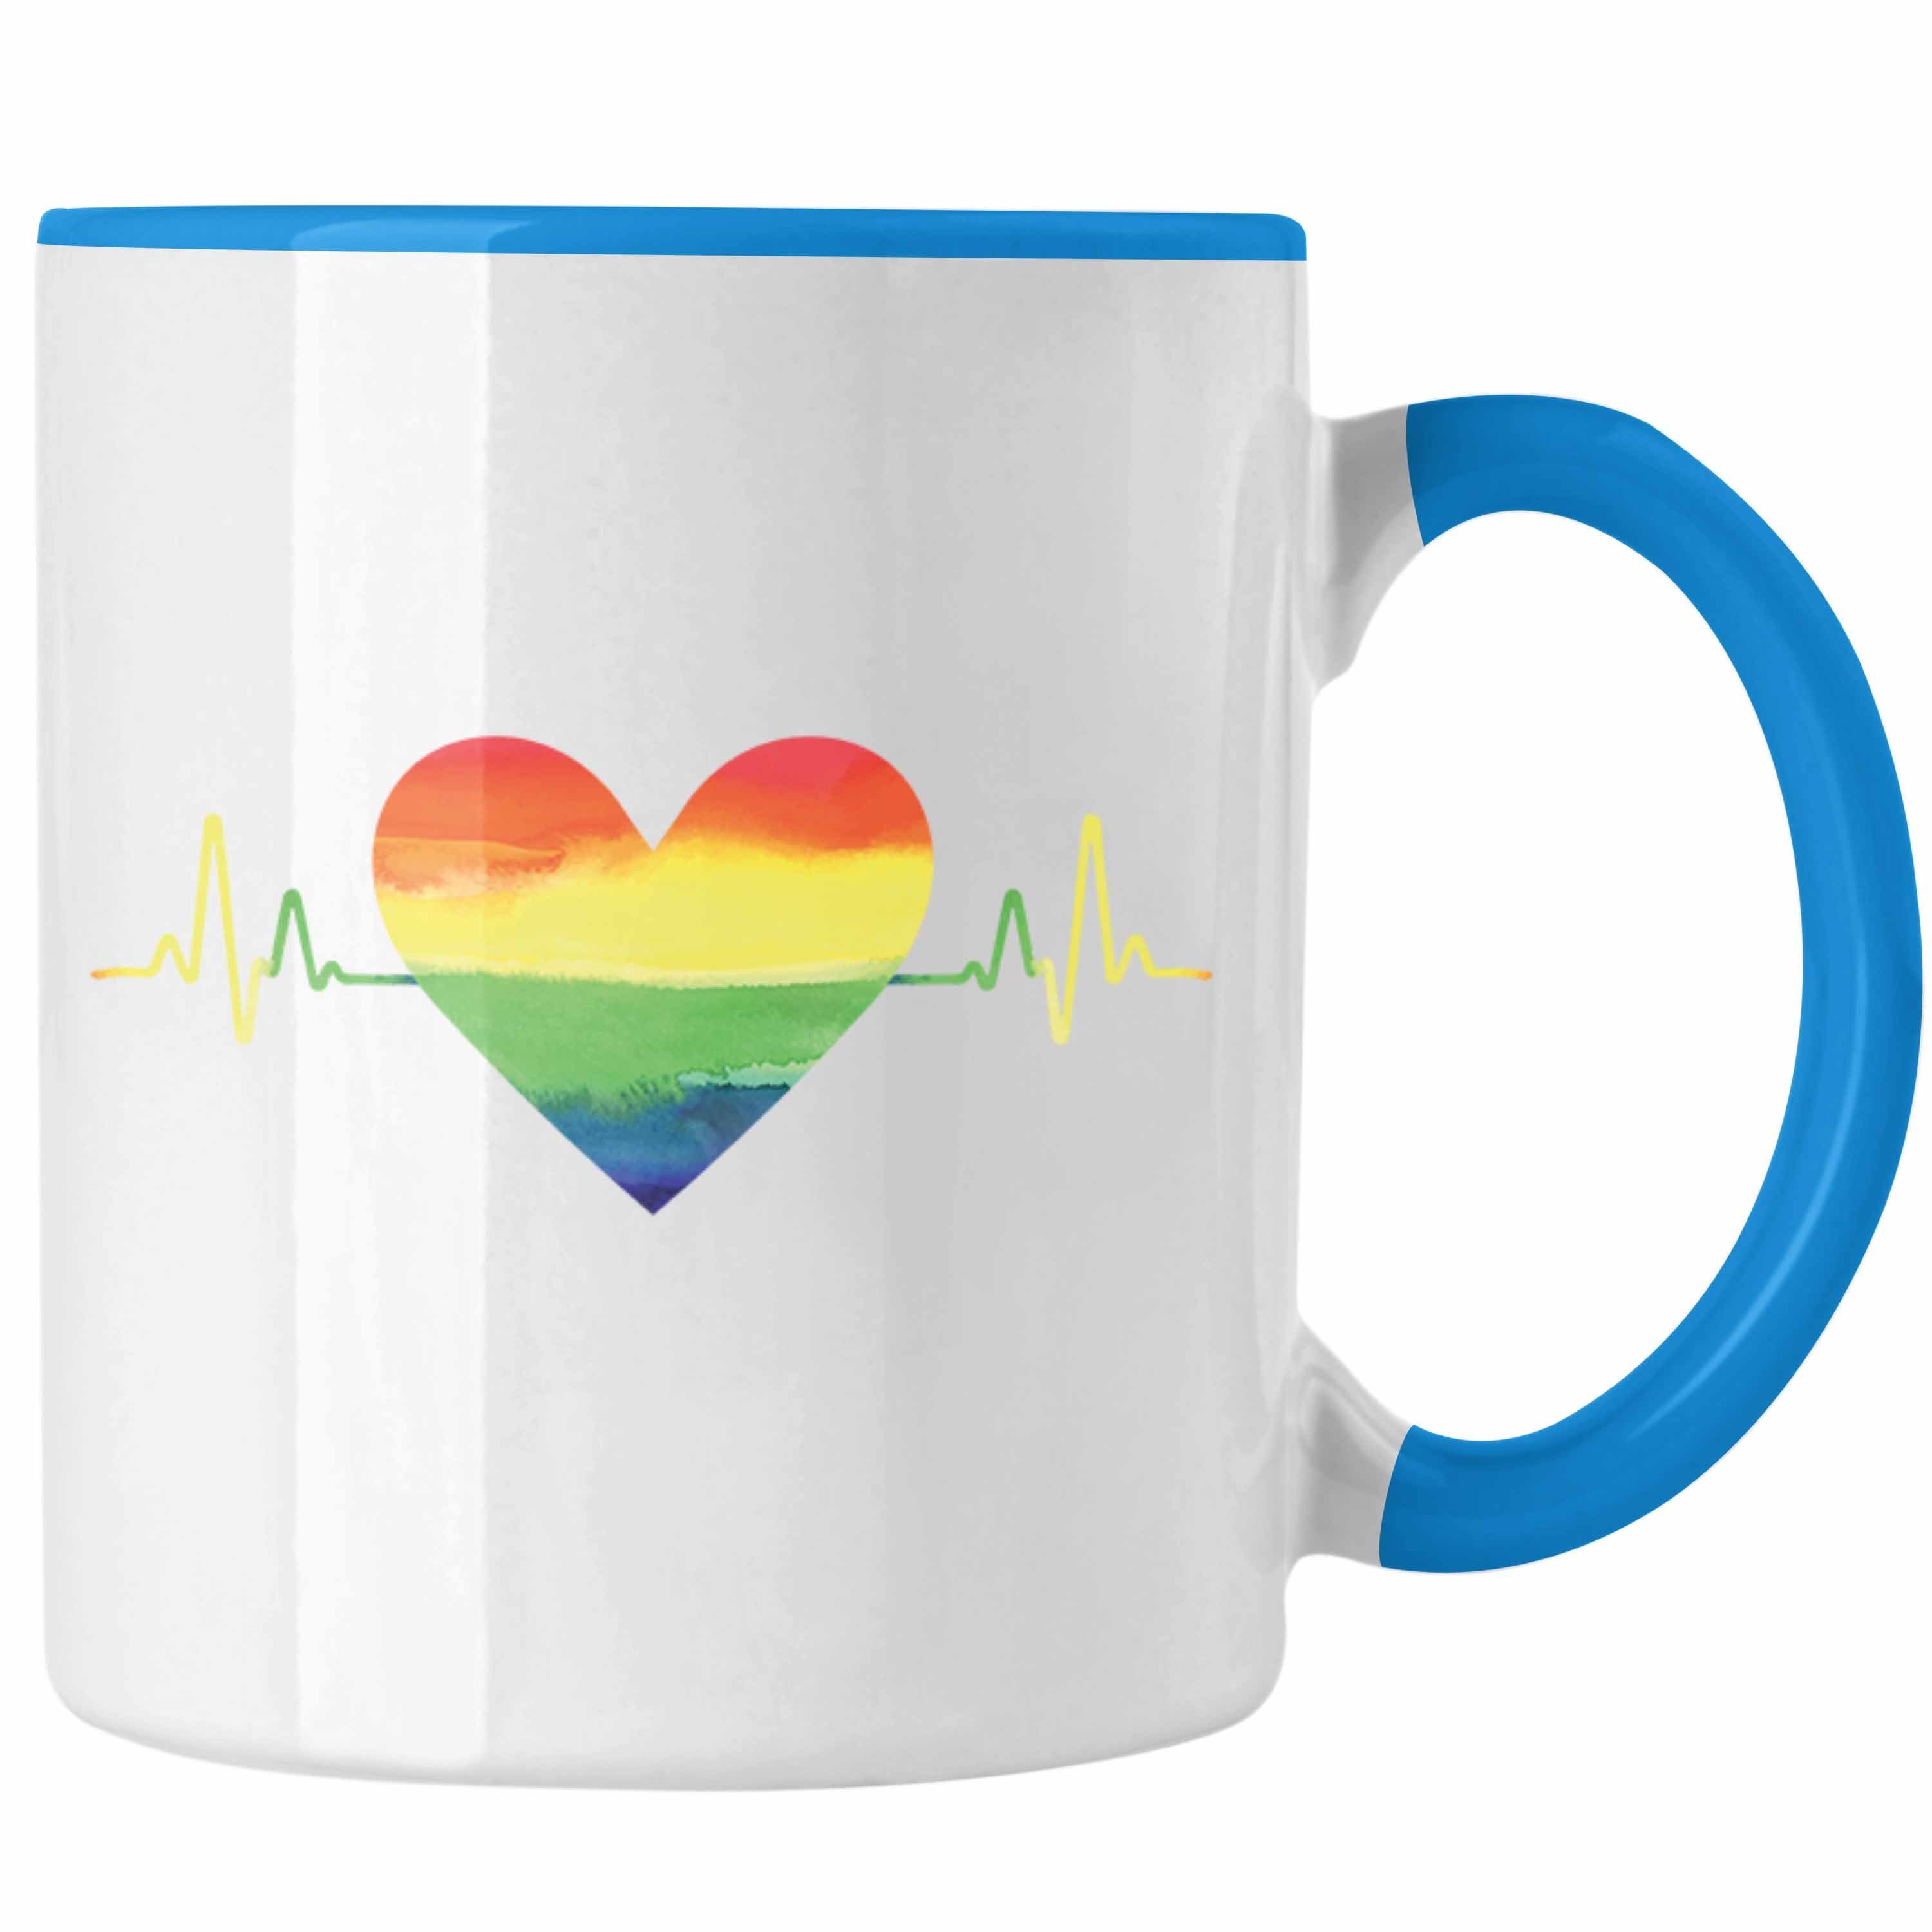 Trendation Tasse Trendation - Regenbogen Tasse Geschenk LGBT Schwule Lesben Transgender Grafik Pride Herzschlag Blau